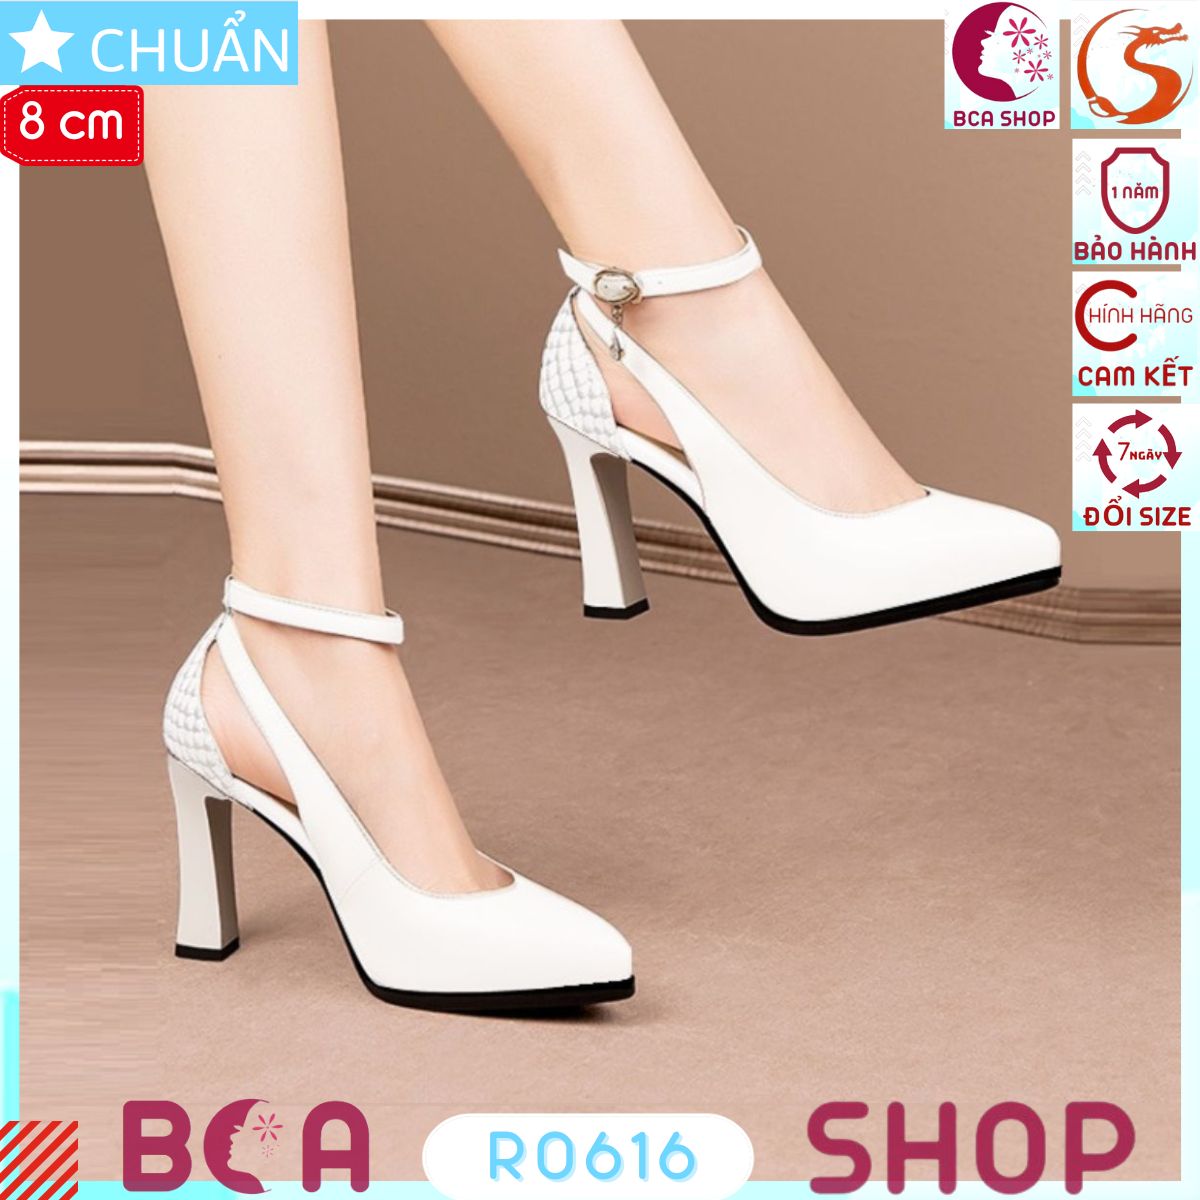 Giày cao gót nữ mũi nhọn 9p RO616 màu trắng ROSATA tại BCASHOP thanh lịch, duyên dáng và thời trang, lại cực kì sang